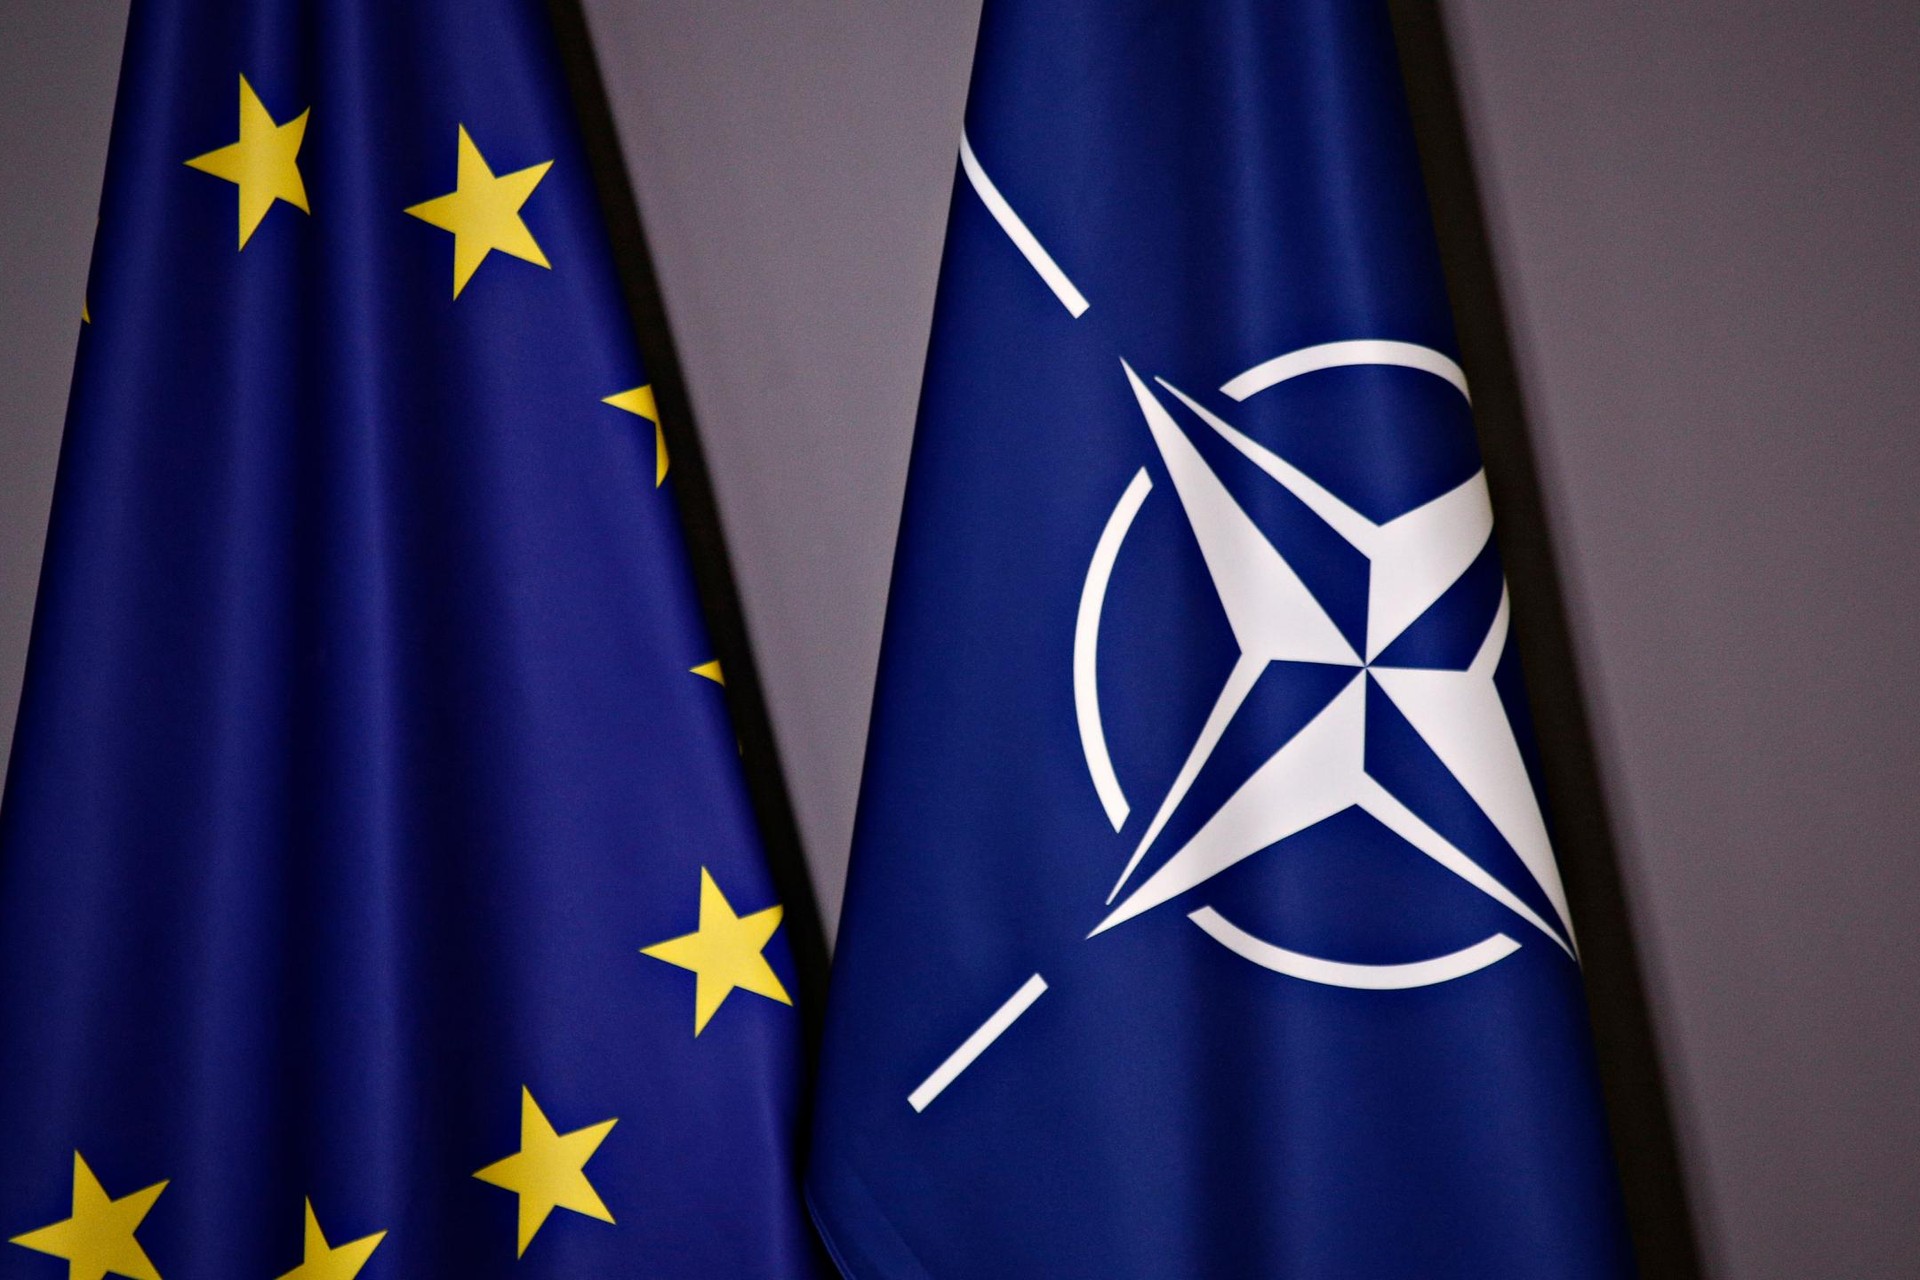 STRATEGIC RETHINKING: NEW NATO’S STRATEGIC CONCEPT AND THE EU’S STRATEGIC COMPASS